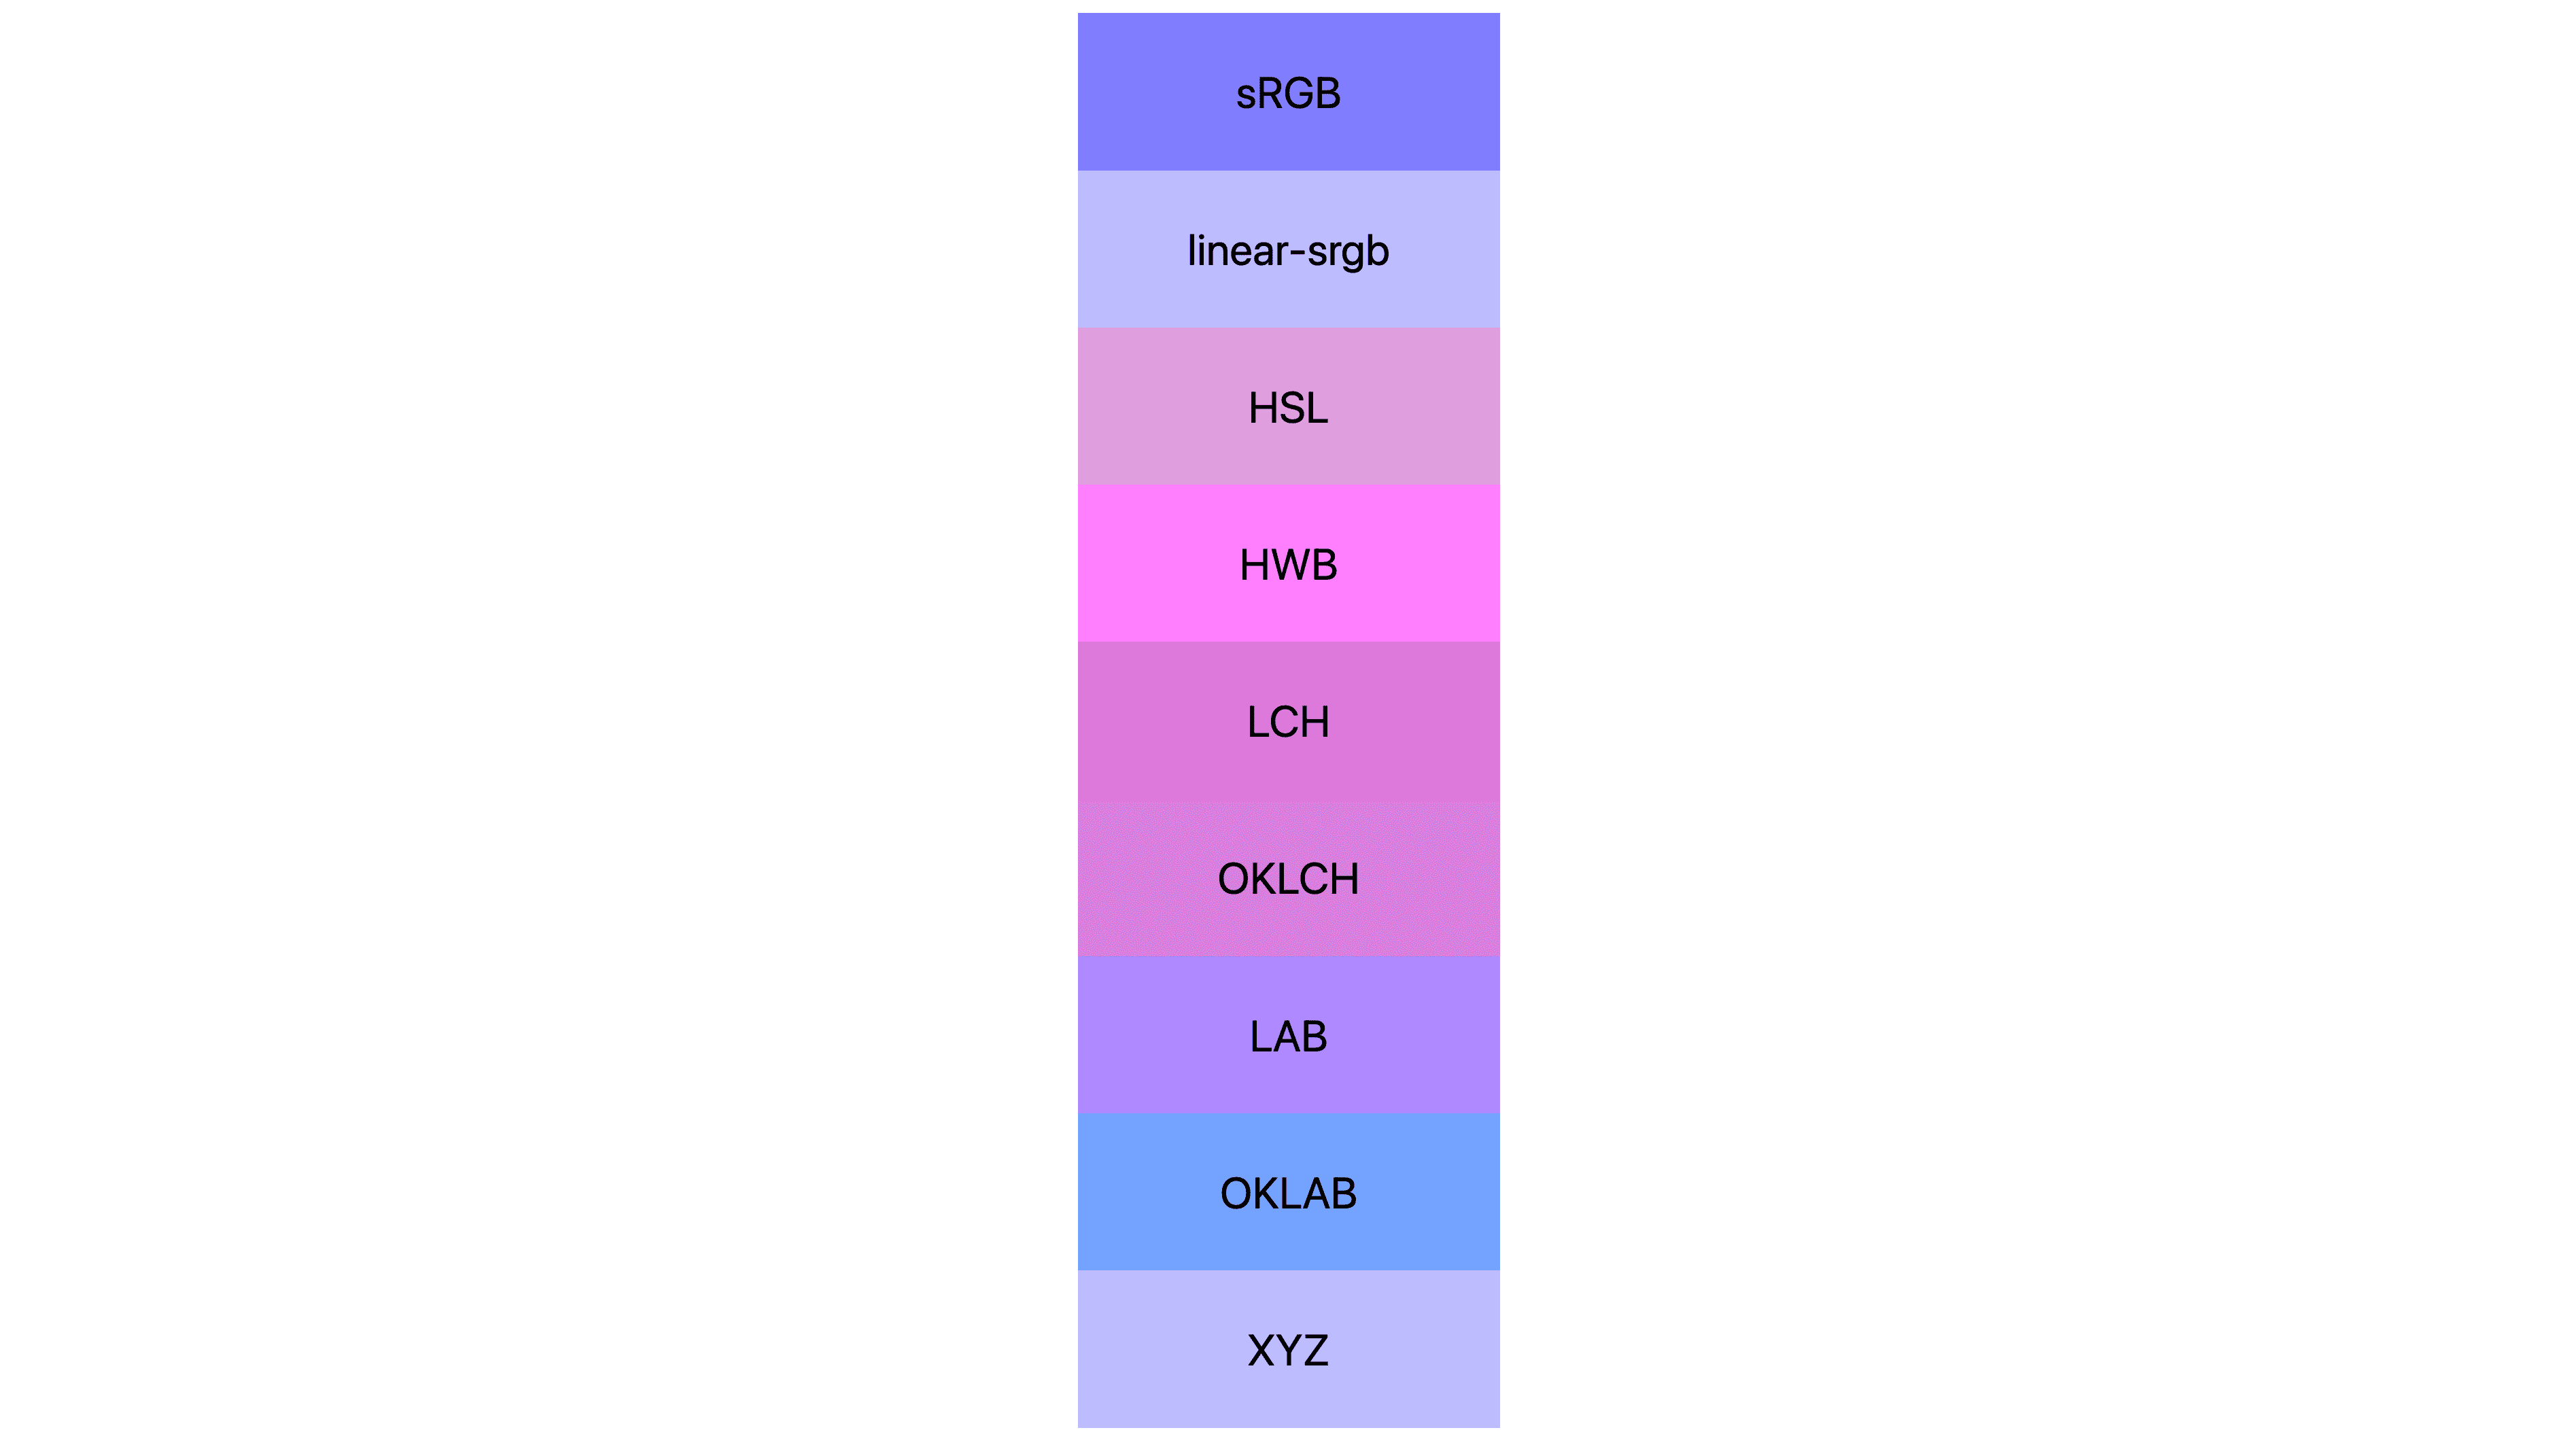 7 Farbbereiche (srgb, linear-srgb, lch, oklch, Lab, oklab, xyz), von denen jeder unterschiedliche Ergebnisse hat. Viele sind rosa oder lila, aber nur wenige sind noch blau.